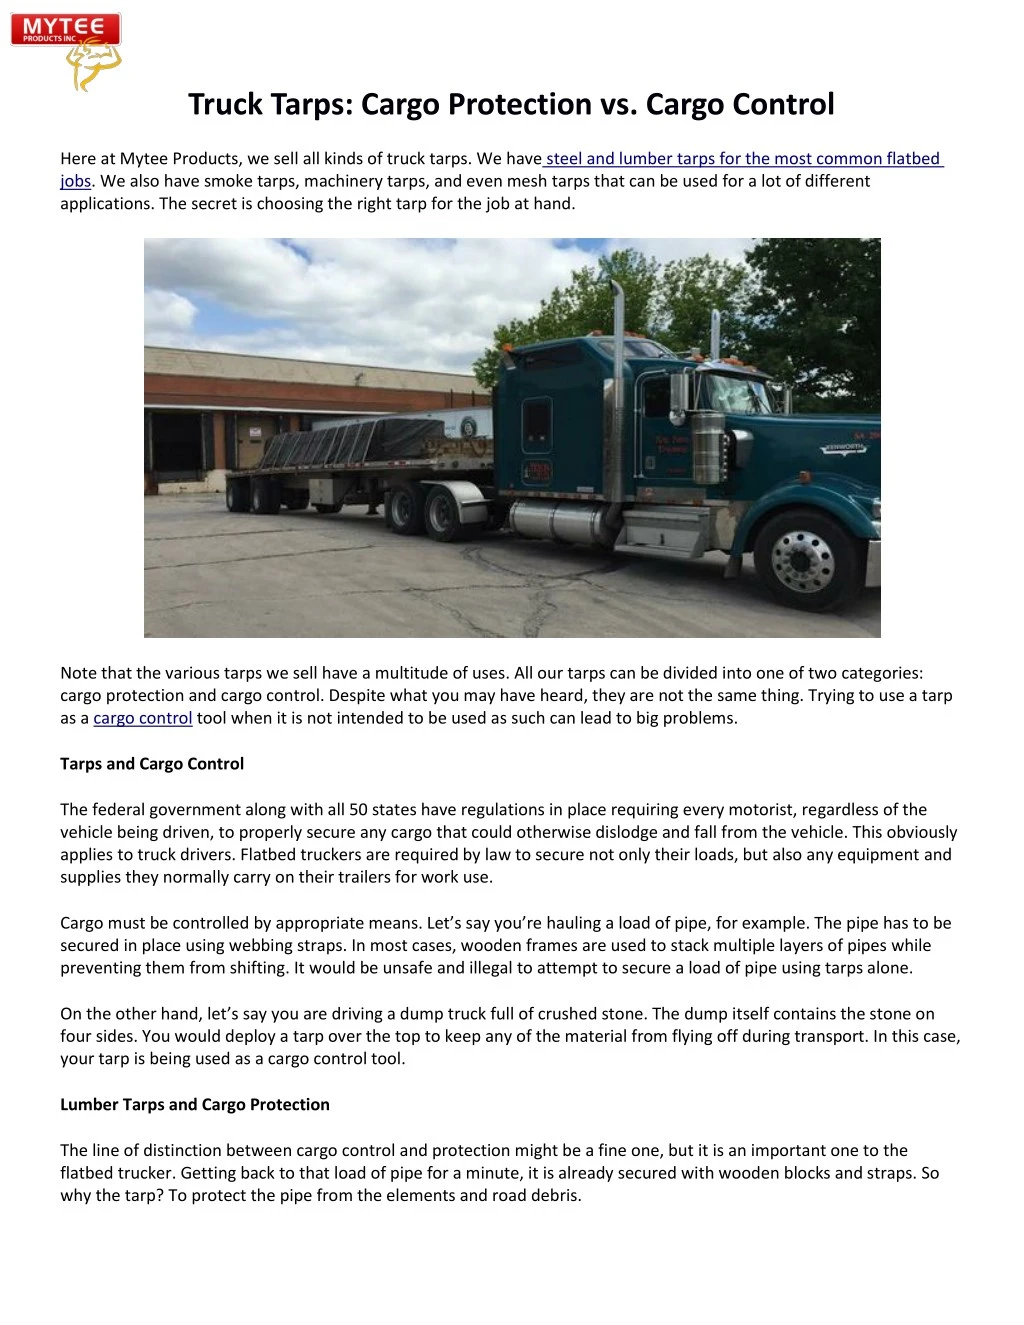 truck tarps cargo protection vs cargo control